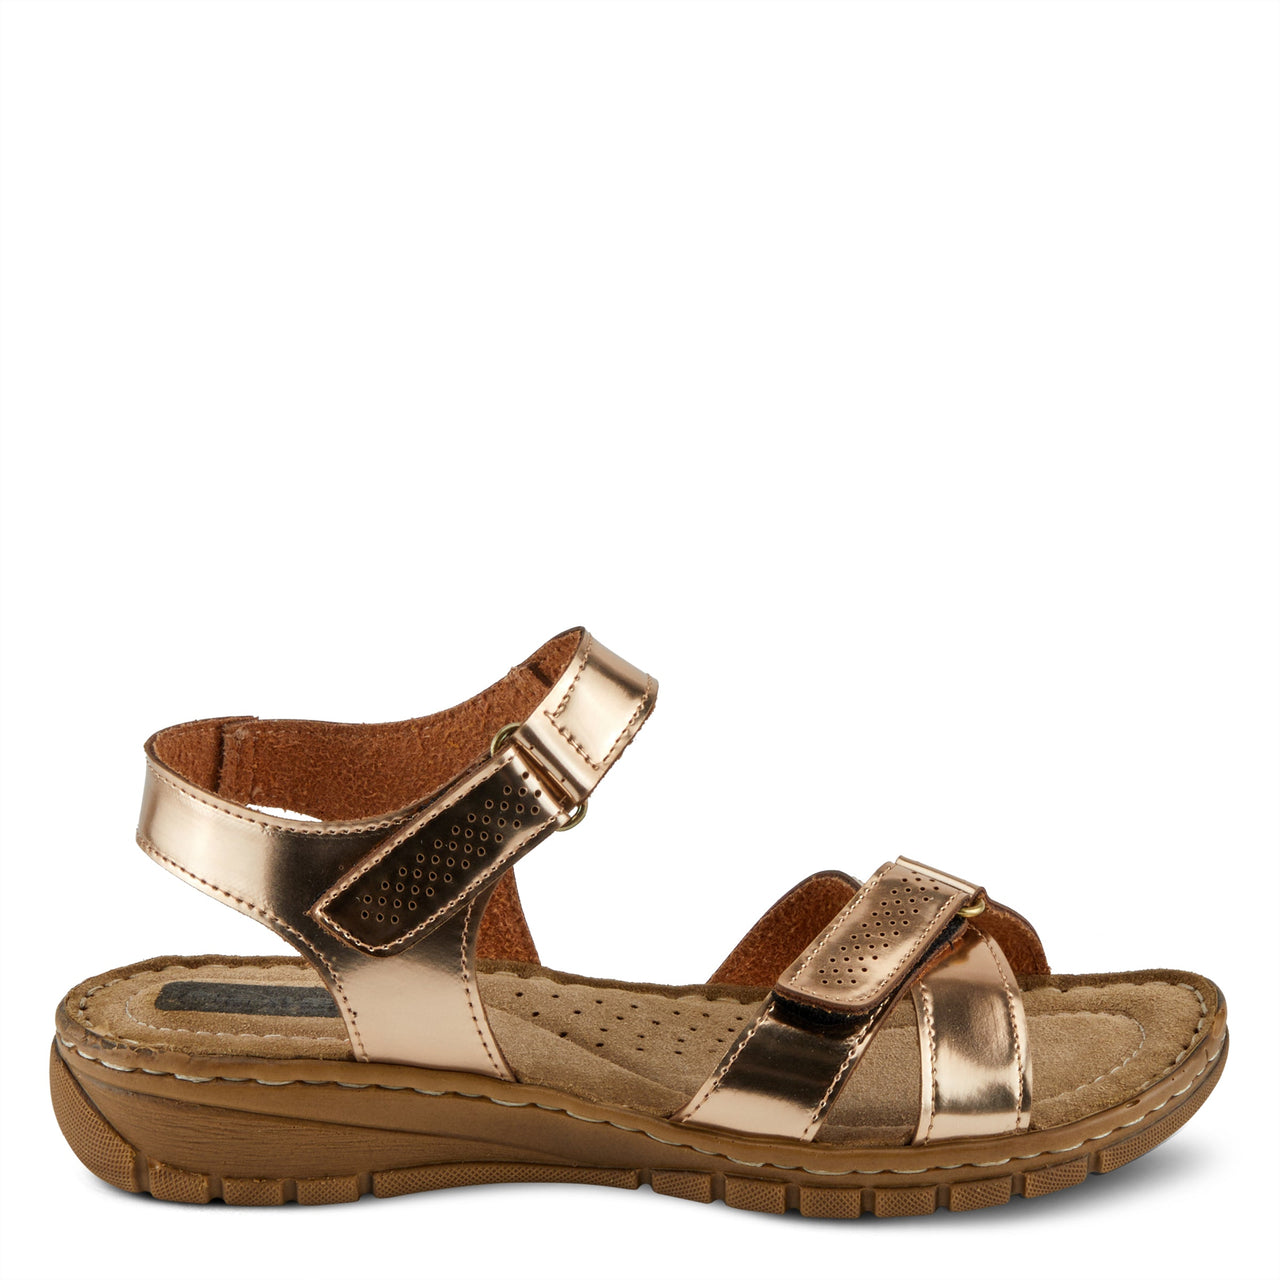 Spring Step Shoes Flexus Mies L061 Sandals